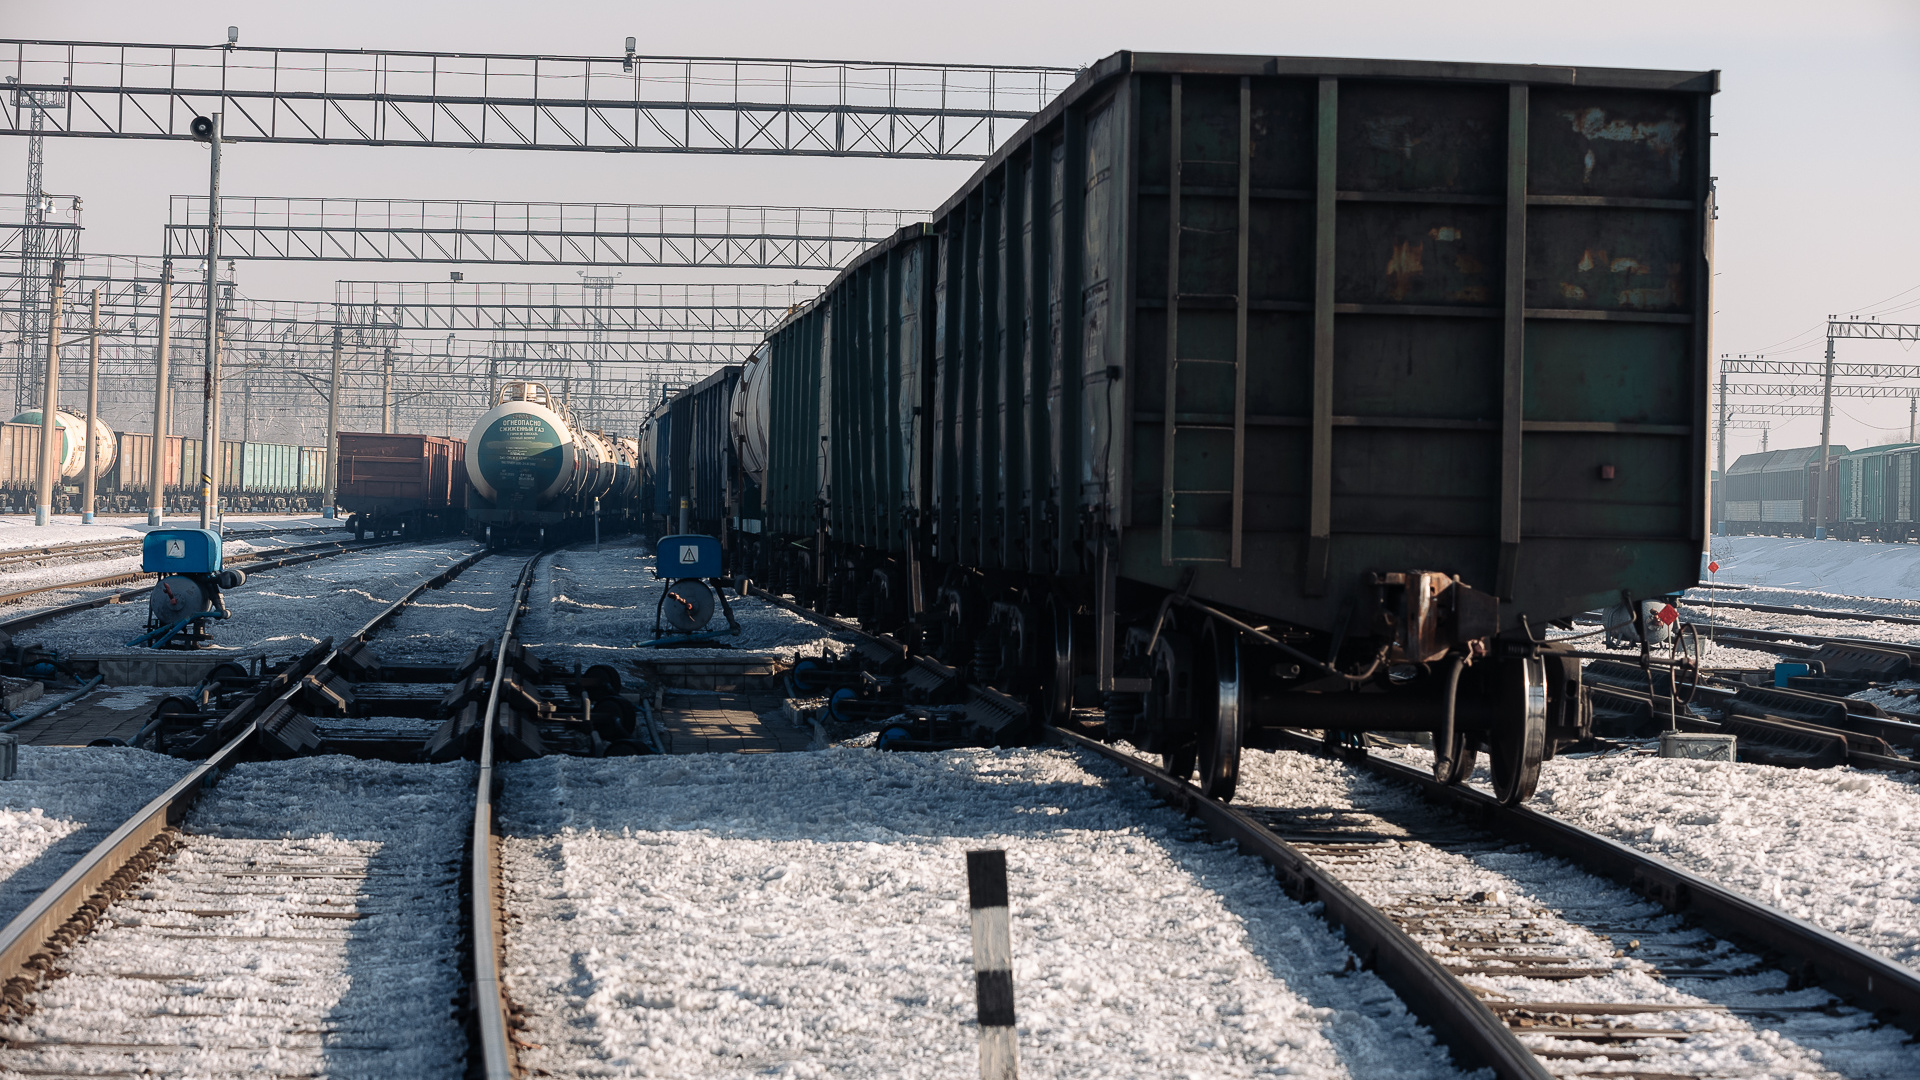 Поезд сбил подростка в Усолье-Сибирском. Парень умер в больнице